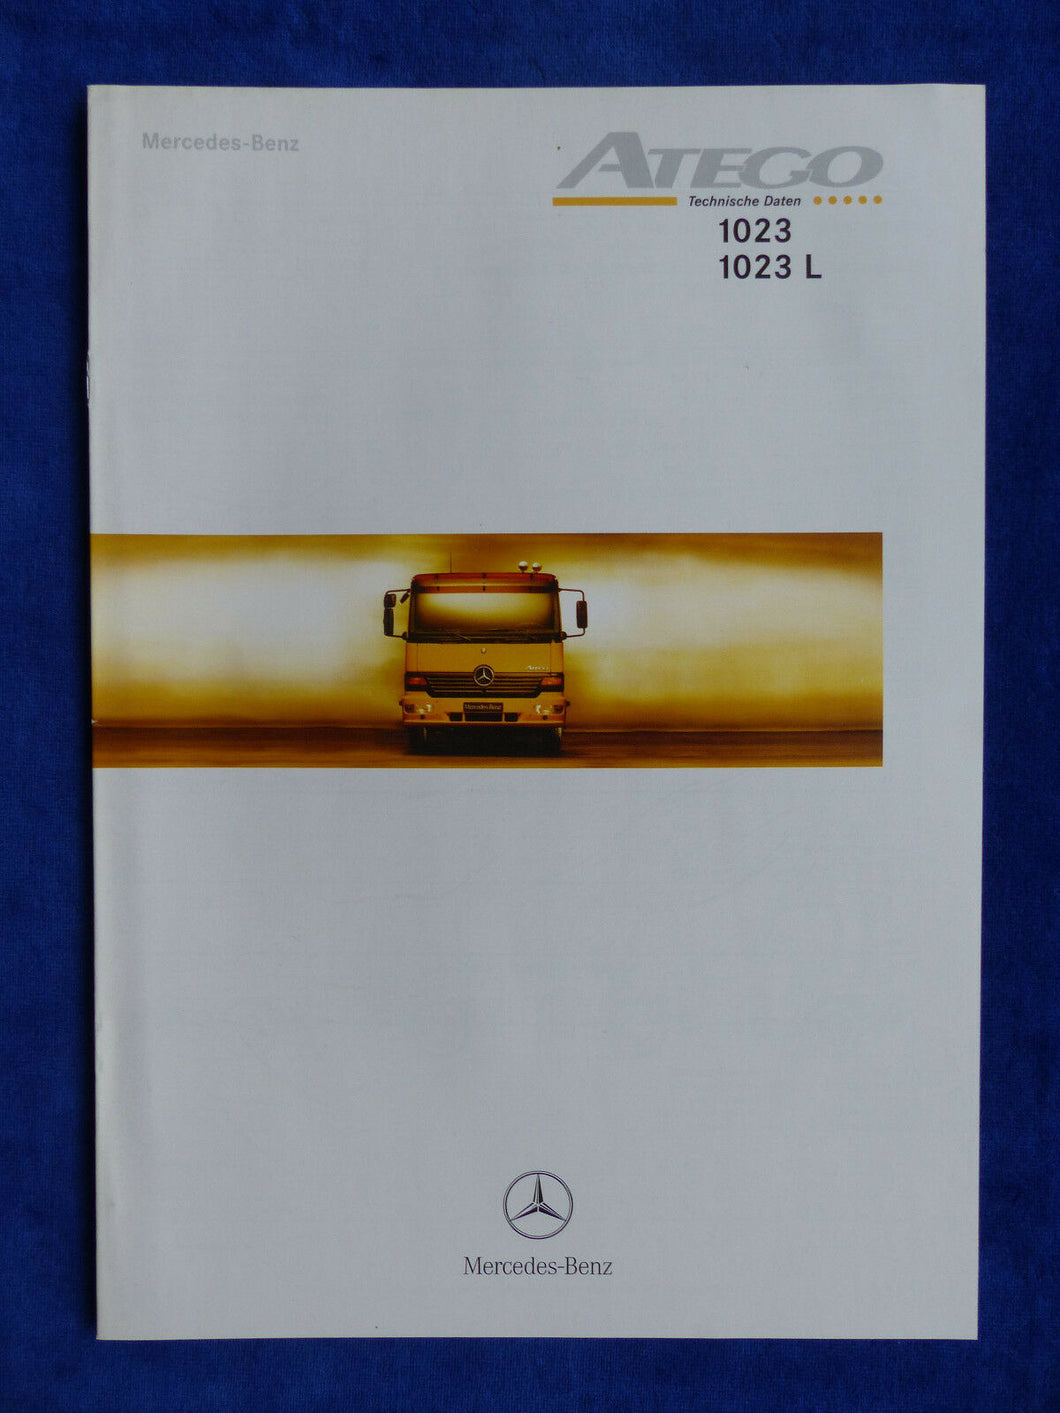 Mercedes-Benz LKW Atego 1023 - Technische Daten MJ 2000 - Prospekt Brochure 10.1999